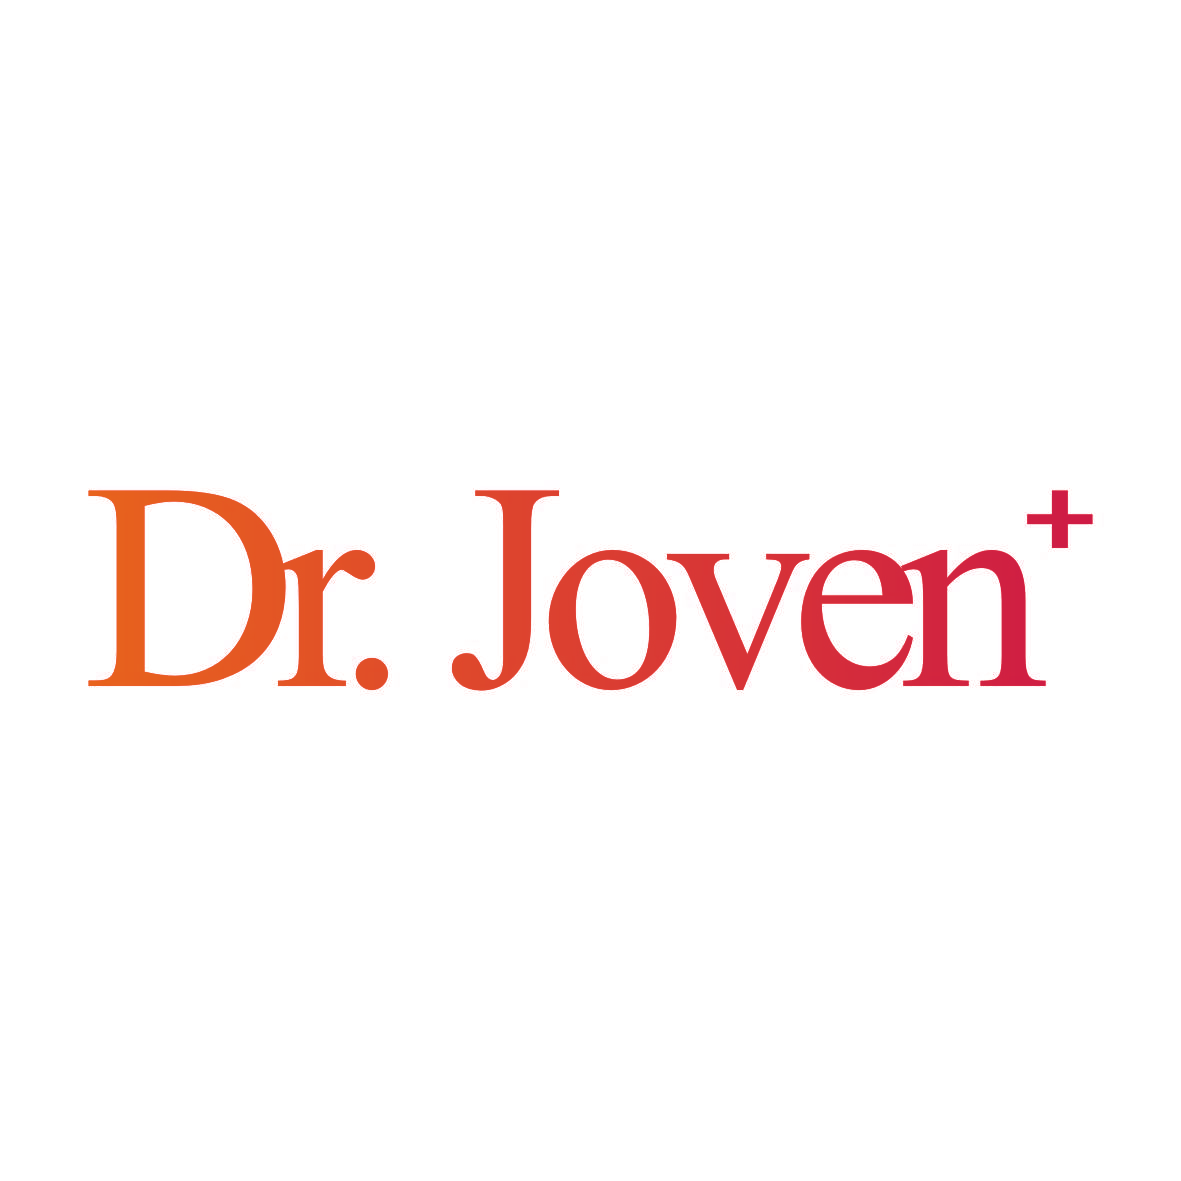 DR.JOVEN+